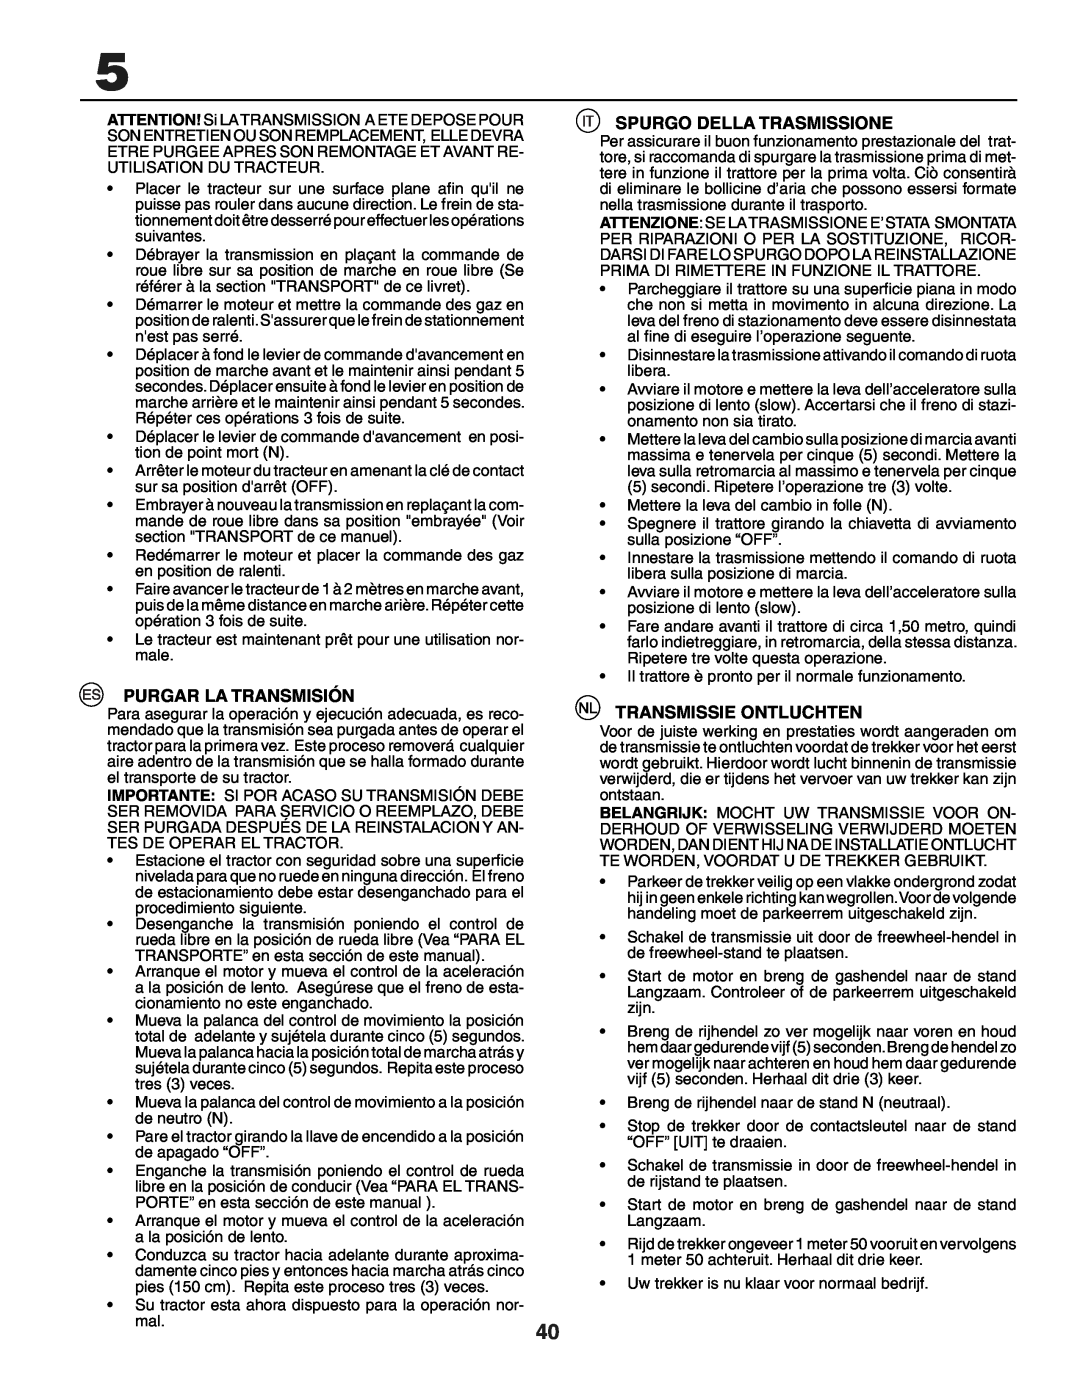 Jonsered LT2118A instruction manual Purgar La Transmisión, Spurgo Della Trasmissione, Transmissie Ontluchten 